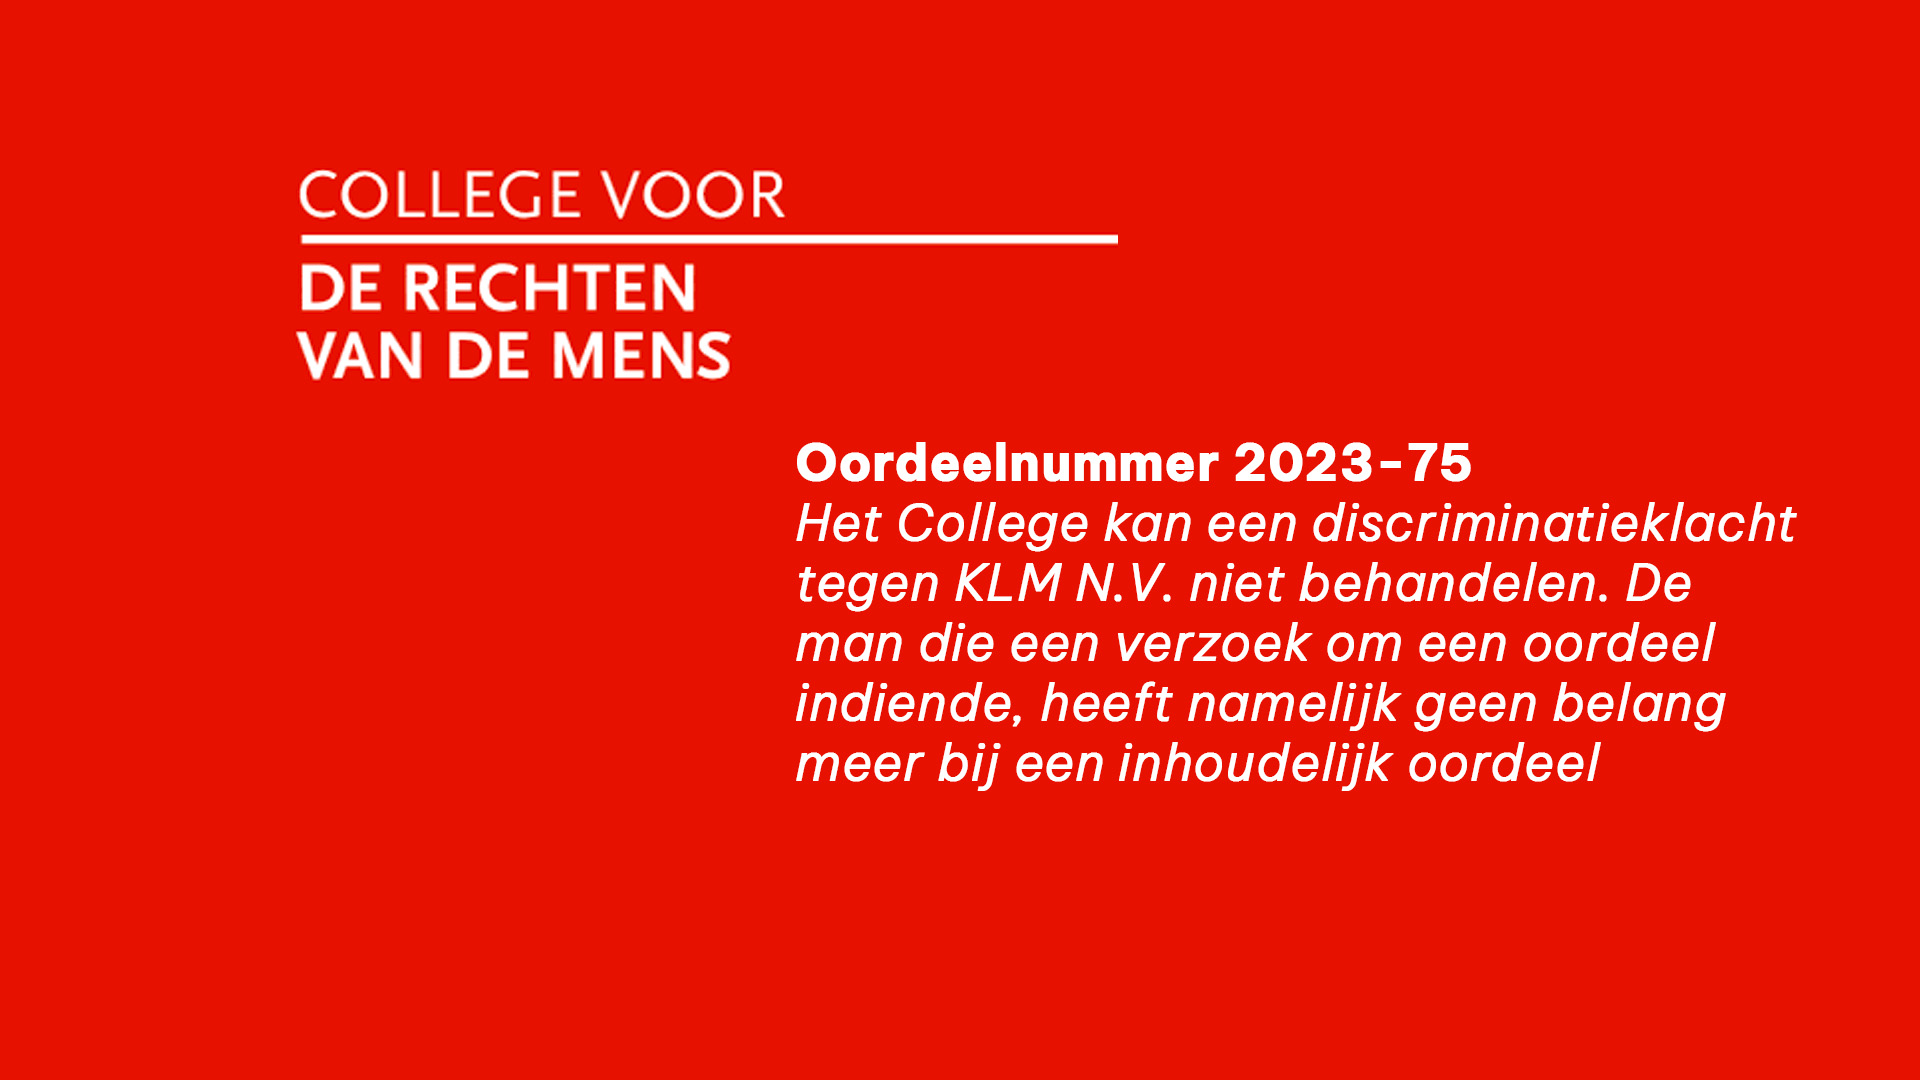 College kan discriminatieklacht tegen KLM niet behandelen wegens vervallen belang indiener bij inhoudelijk oordeel